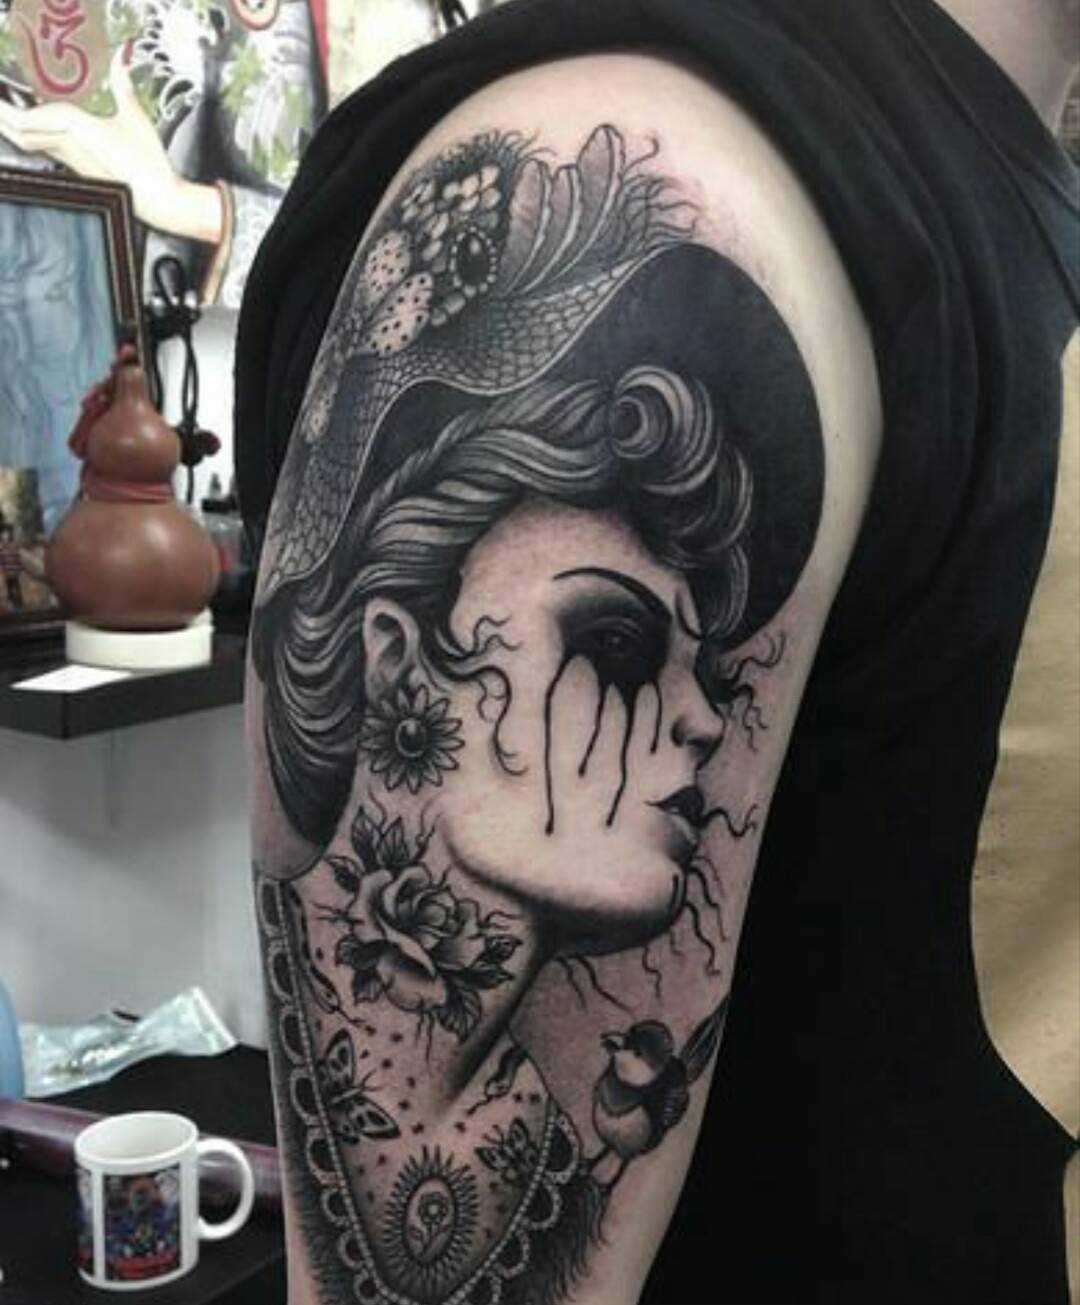 Fotos de tatuagem de uma menina de estilo gótico no ombro do cara